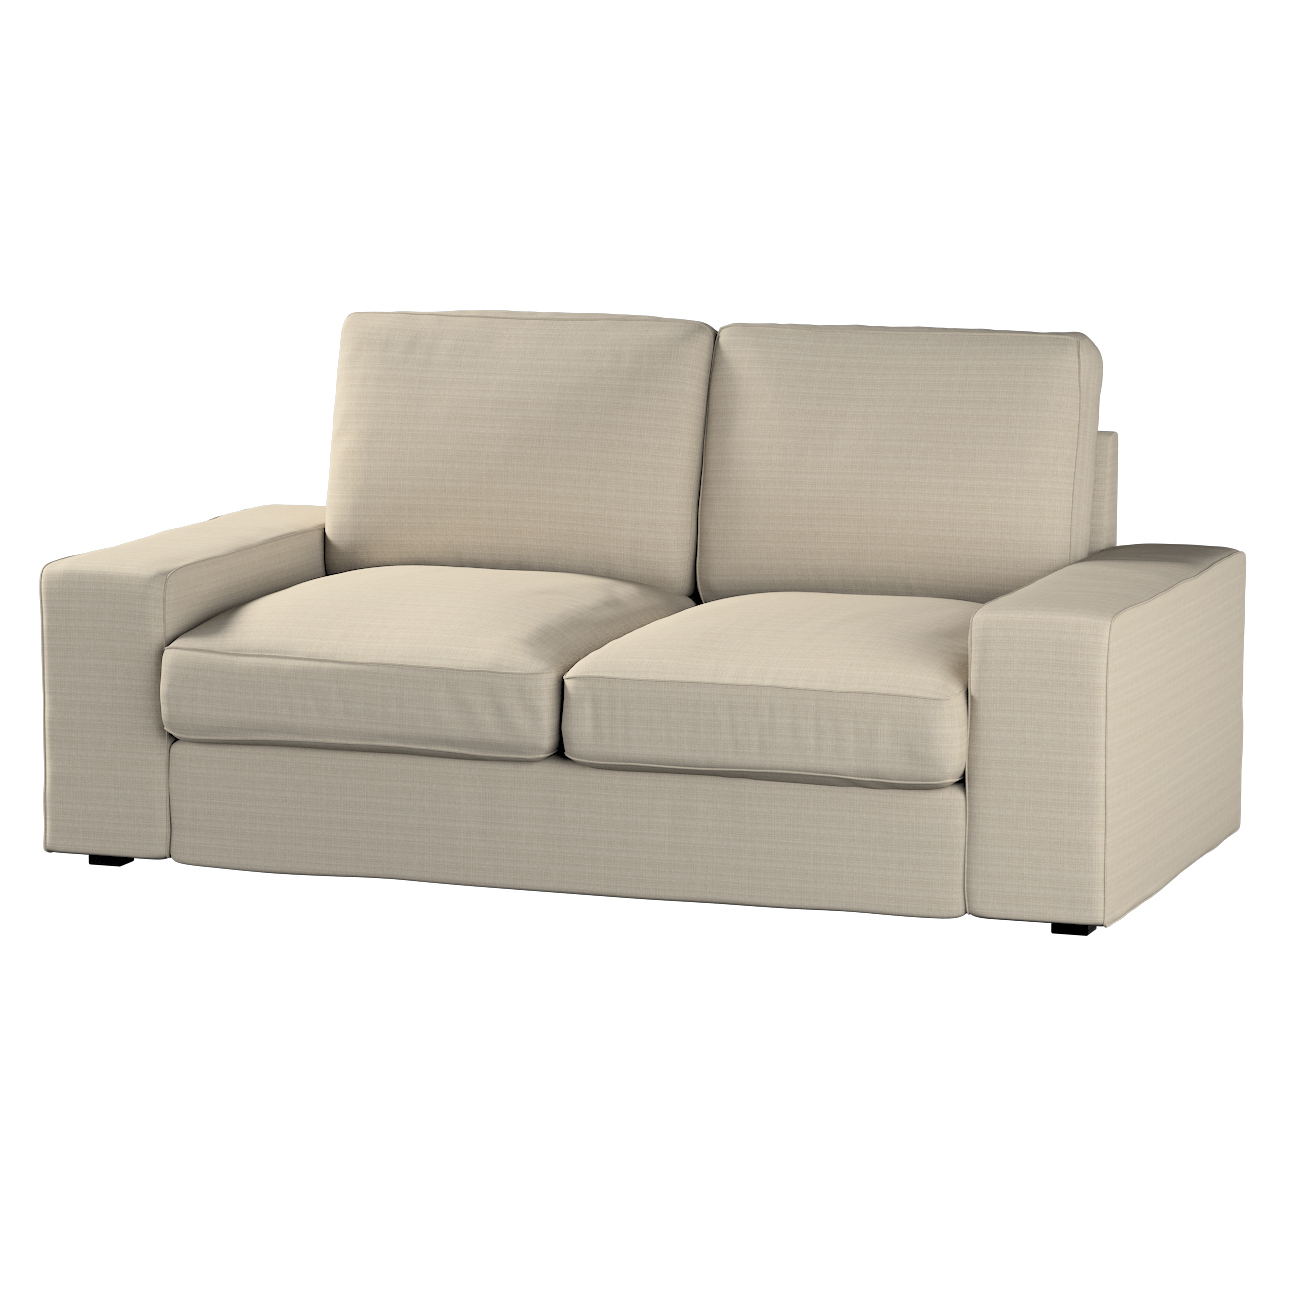 Bezug für Kivik 2-Sitzer Sofa, beige, Bezug für Sofa Kivik 2-Sitzer, Living günstig online kaufen